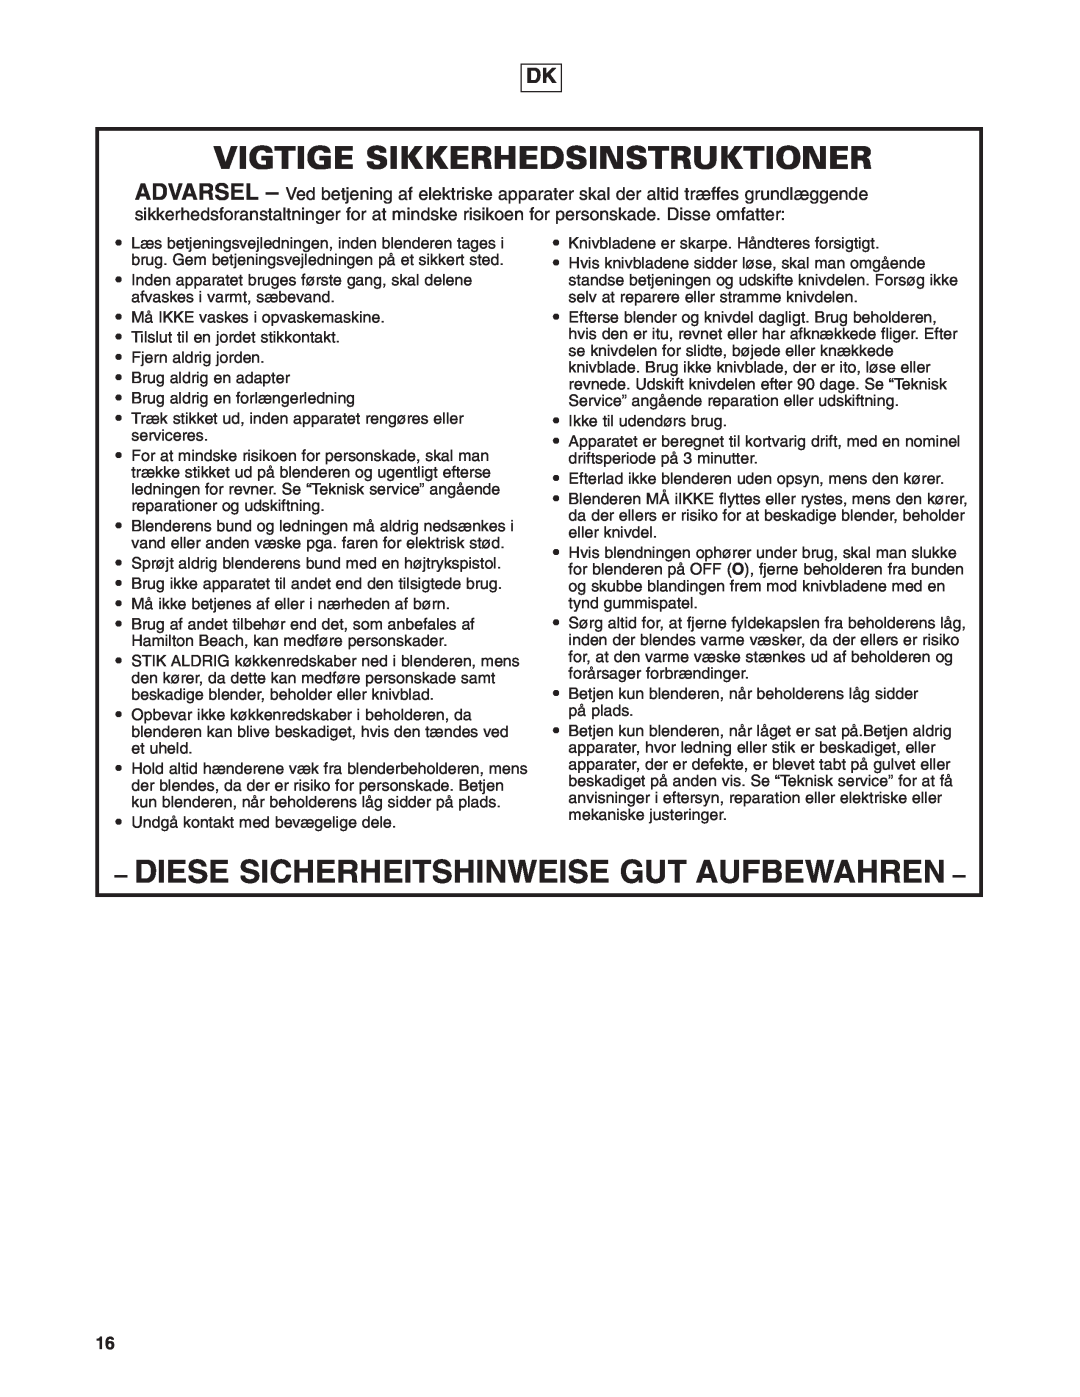 Hamilton Beach 908 Series operation manual Vigtige Sikkerhedsinstruktioner, Diese Sicherheitshinweise Gut Aufbewahren 